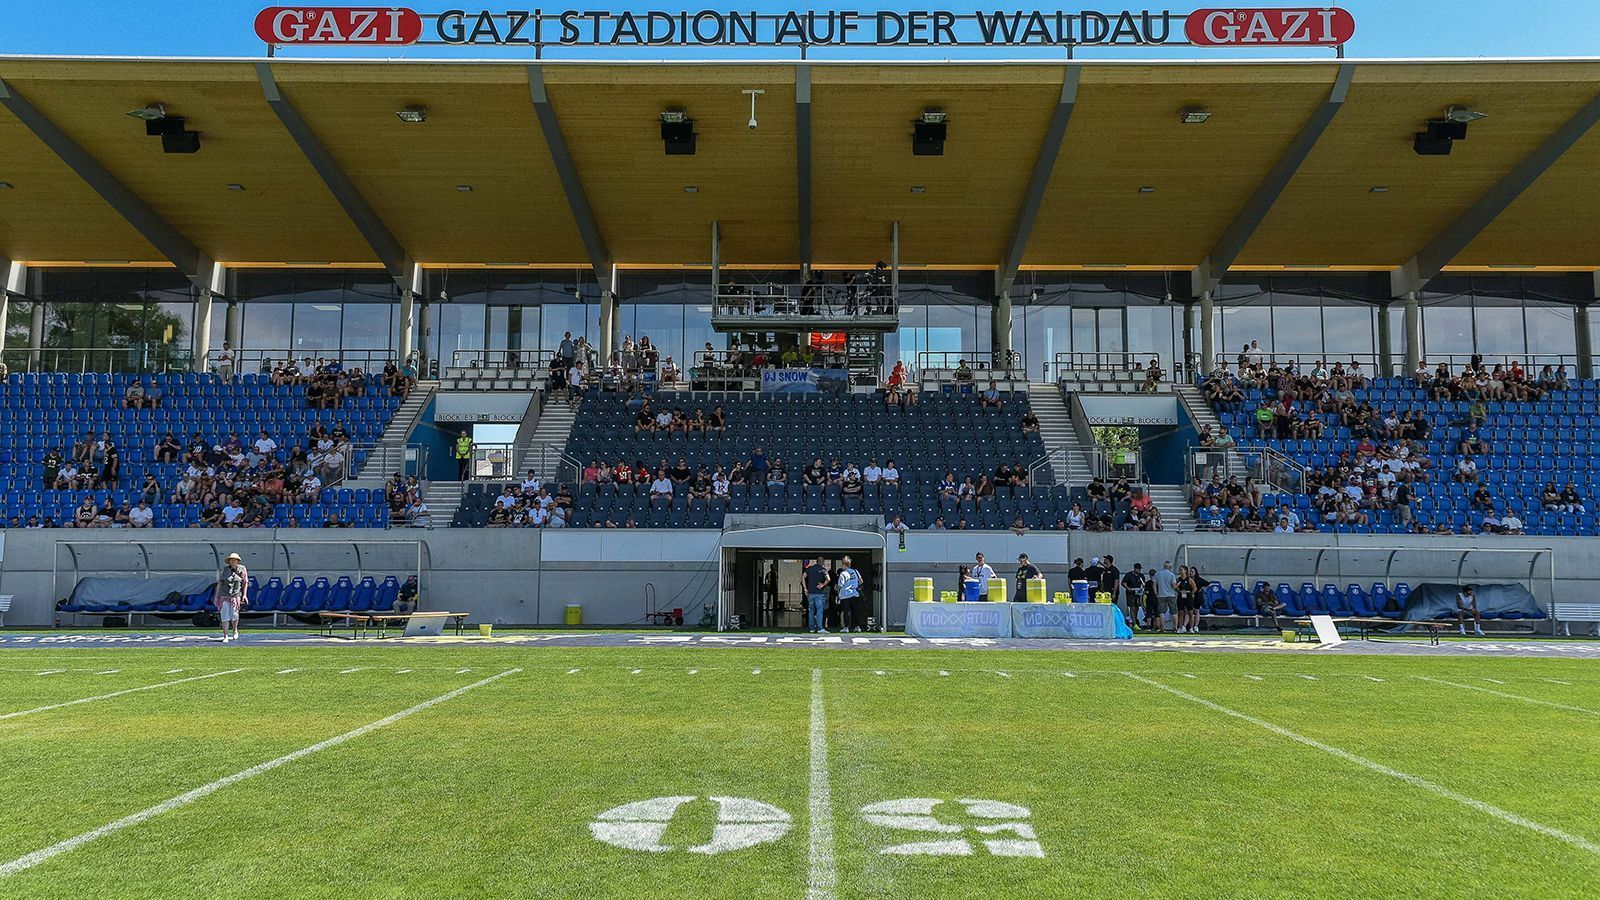 
                <strong>Stuttgart Surge</strong><br>
                Auch aus Baden-Württemberg gibt es einen Vertreter in der ELF. Die Stuttgarter spielen im Gazi-Stadion auf der Waldau unterhalb des Fernsehturms. 11.468 Zuschauer fasst die Heimstätte.
              